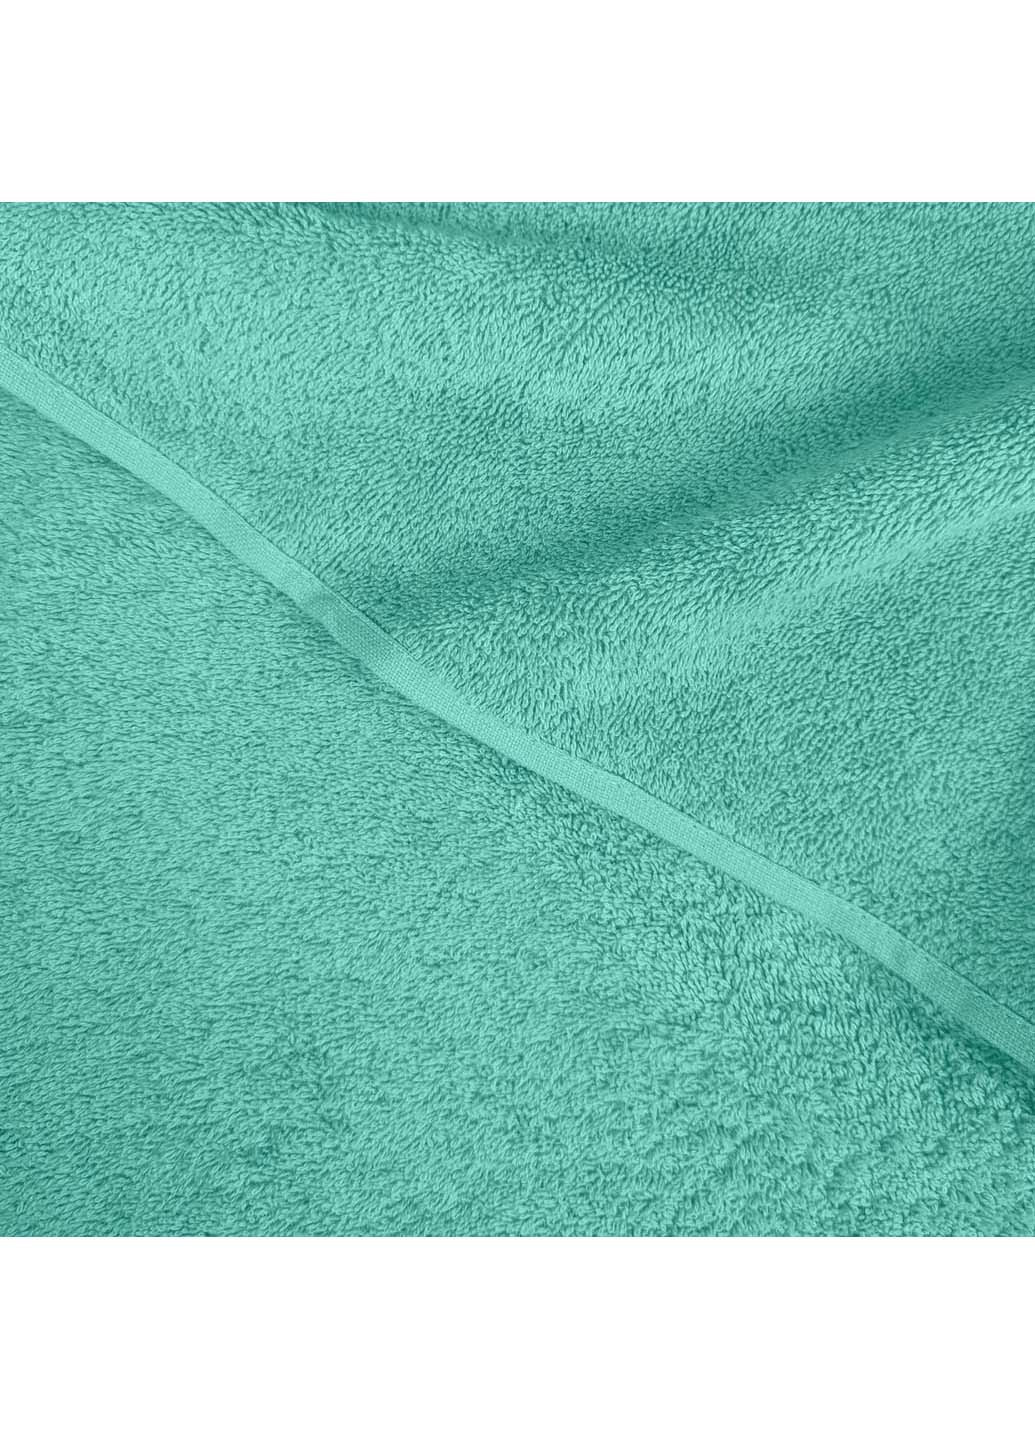 Cosas полотенце махровое 100х150 см мятный производство -